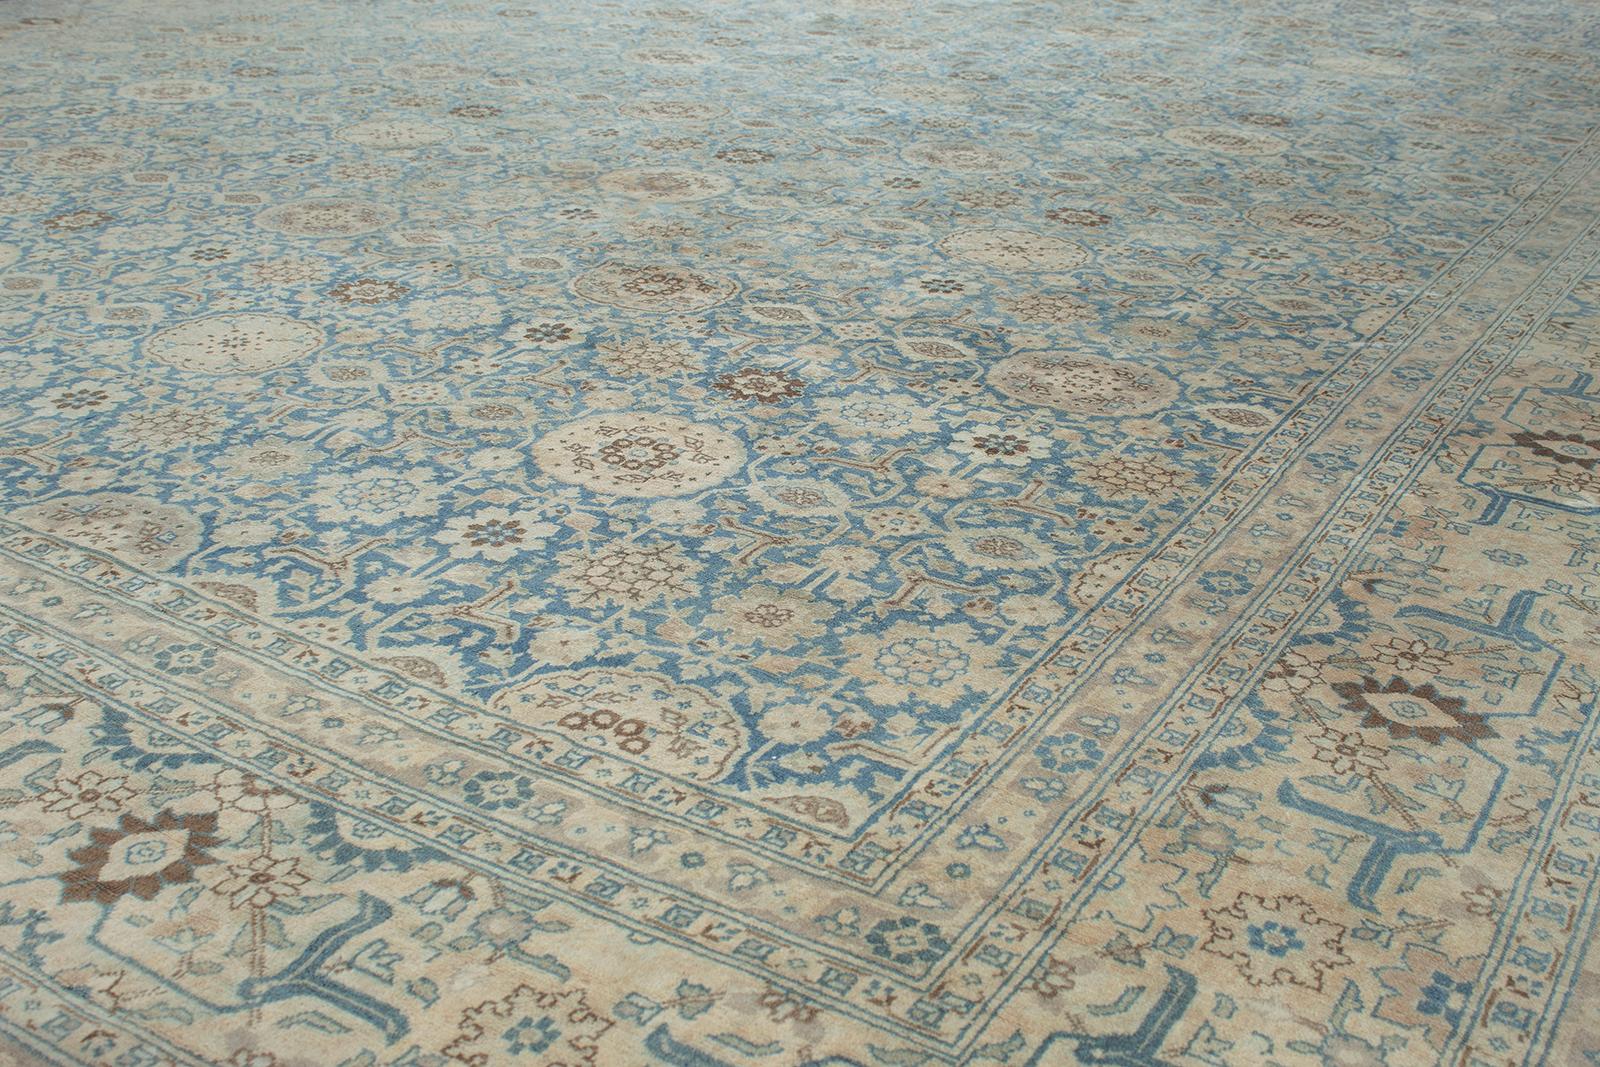 Dieser antike Hadji Jalili-Tabriz-Teppich wurde von N A S I R I durch umfangreiche Recherchen und Reisen aufgespürt. Die im Nordwesten des Irans gelegene Stadt Täbris war die früheste Hauptstadt der Safawiden-Dynastie. Sie war länger als jede andere